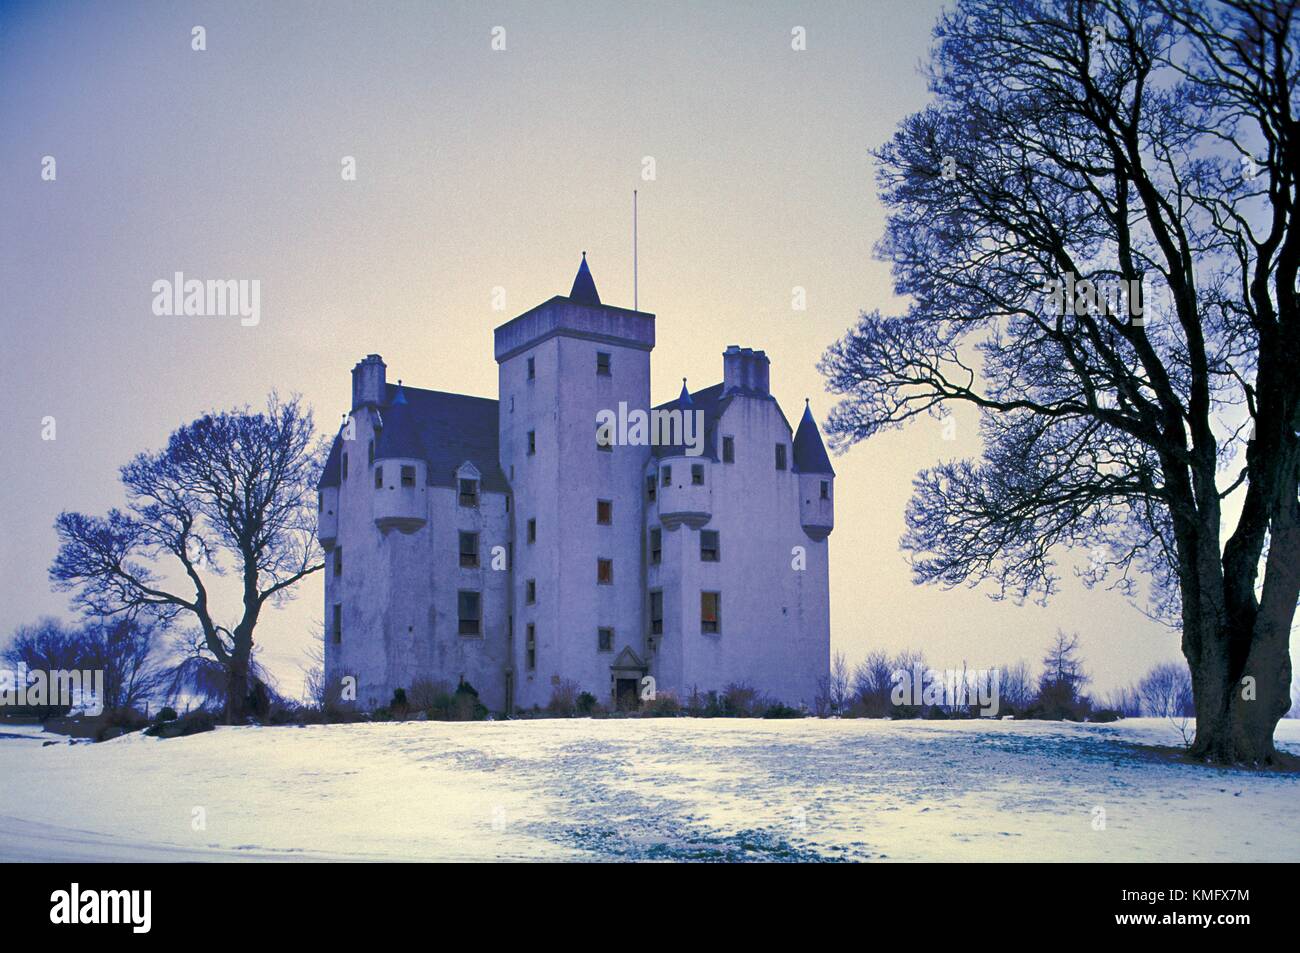 Baronale scozzese Leslie in stile castello, a nord-ovest di Aberdeen a Grampian Highlands, Scozia, risale al 14 secolo Foto Stock